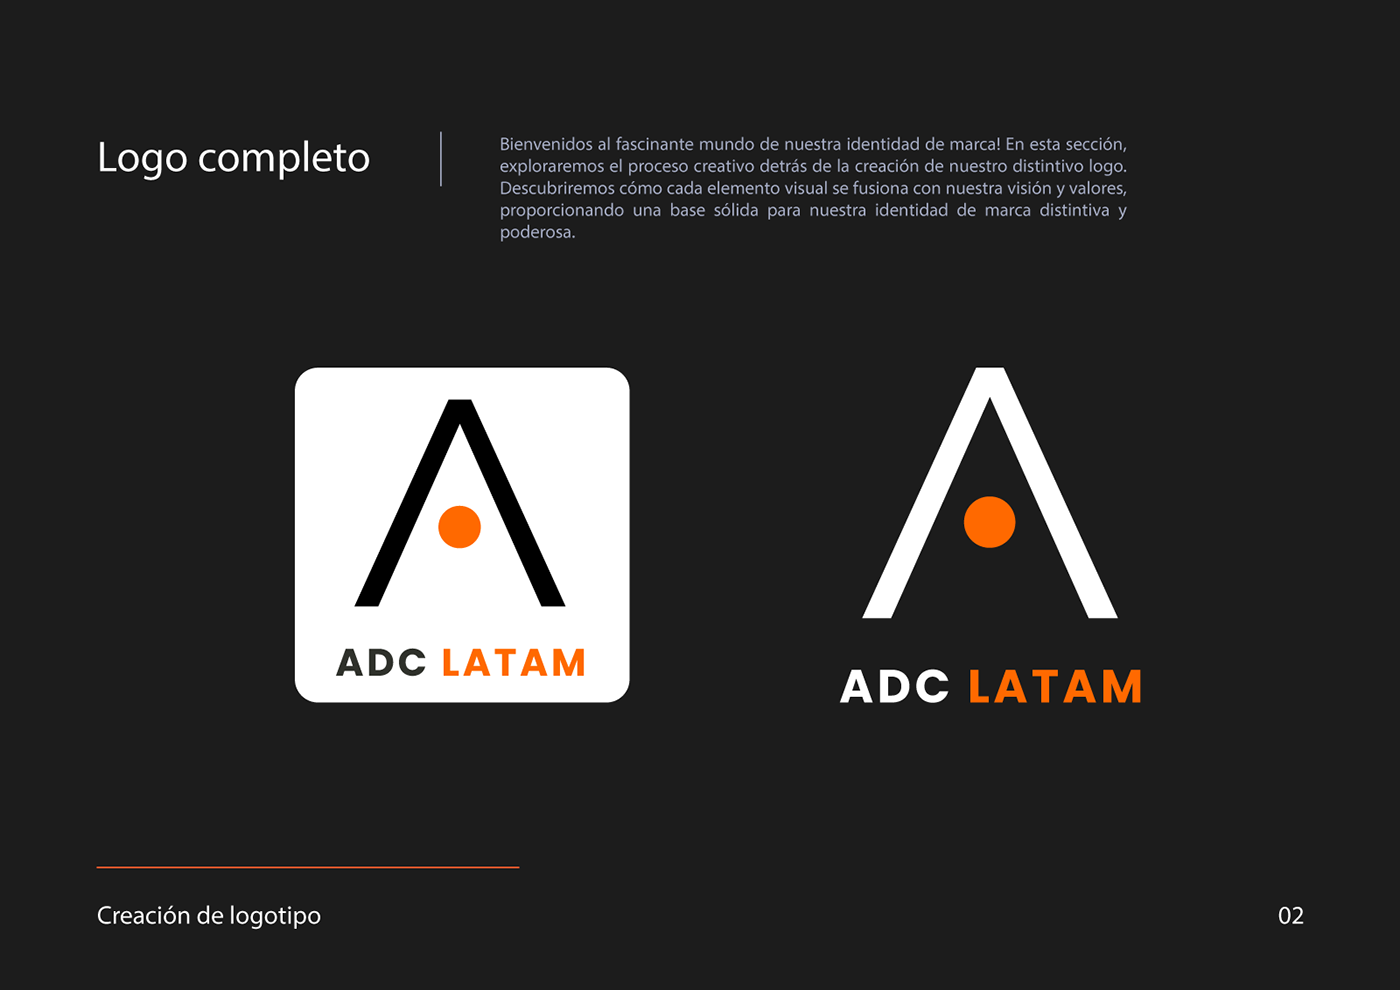 Logo Design brand identity adobe illustrator visual identity